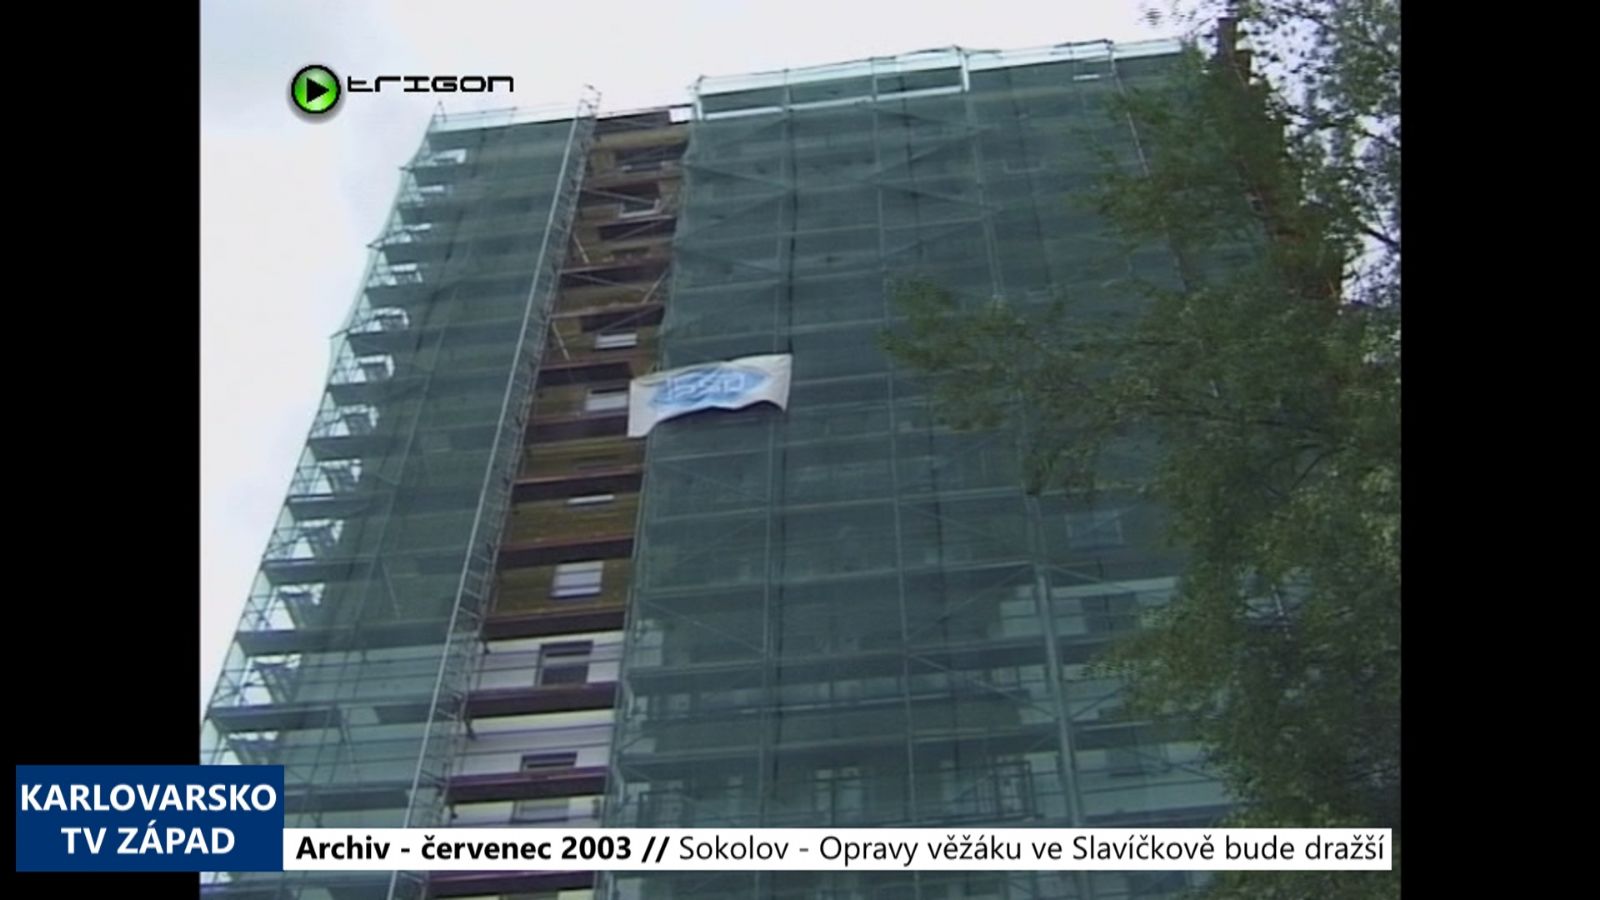 2003 – Sokolov: Opravy věžáku ve Slavíčkově budou dražší (TV Západ)